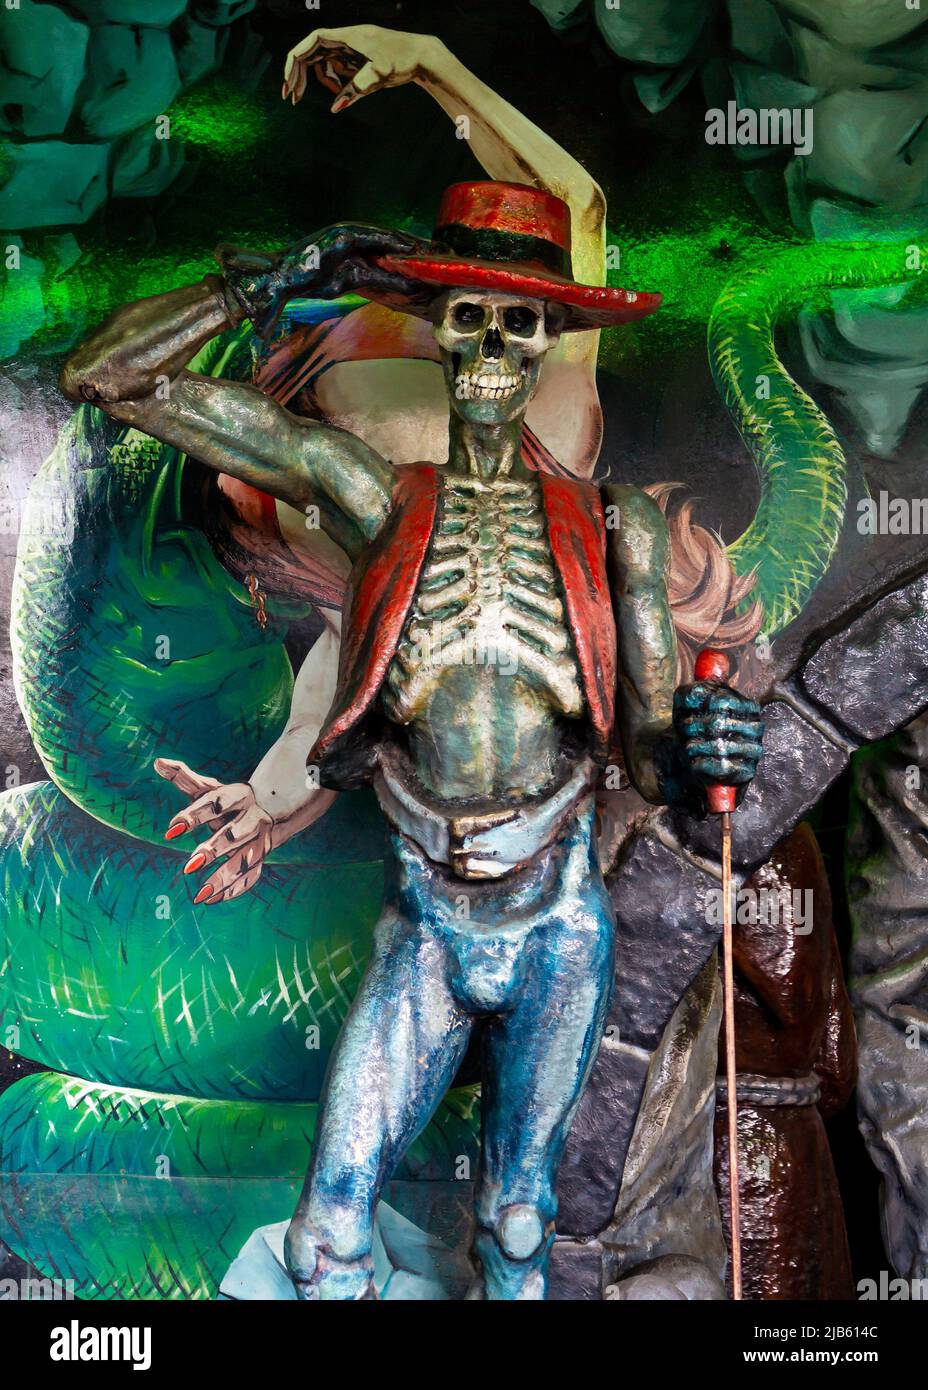 Wien, Österreich - 16. August 2019 : Skelett menschliche Größe Figur in einem Geisterhaus im Vergnügungspark Prater in Wien, Österreich. Stockfoto